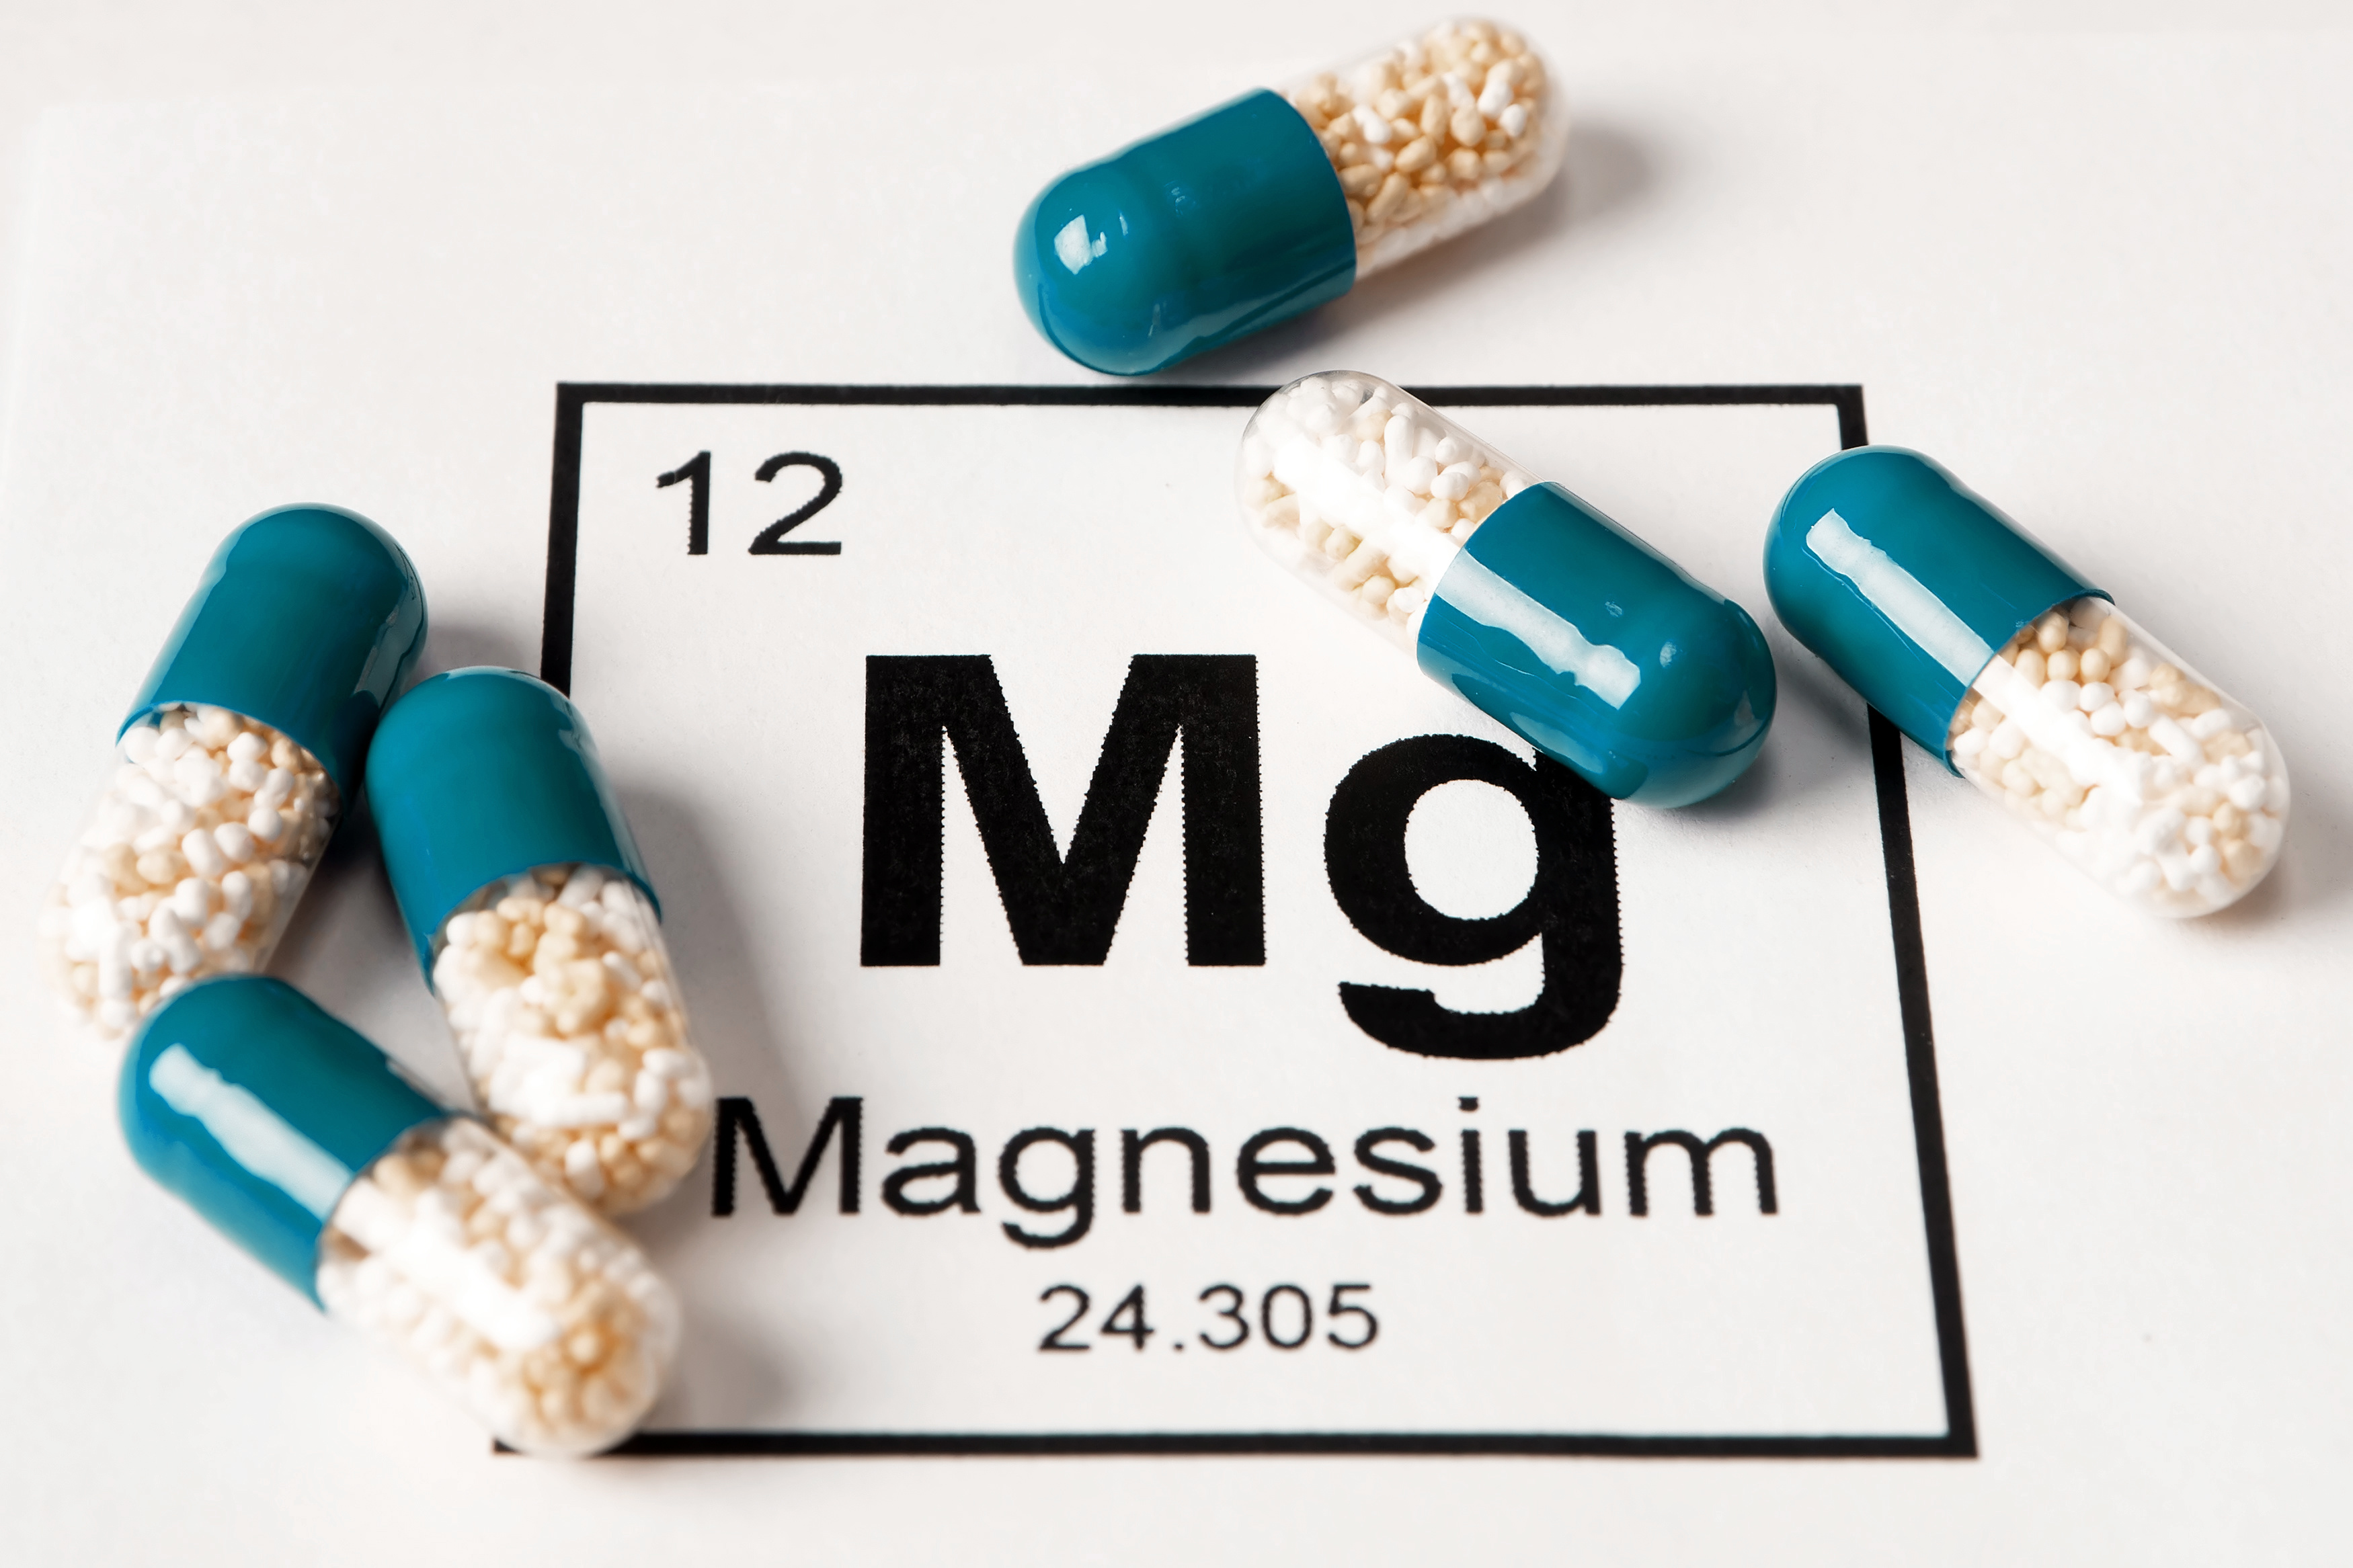 Článků o využitelnosti magnesia bylo již mnoho! Víte ale kolik elementárního magnesia skutečně doplňujete?